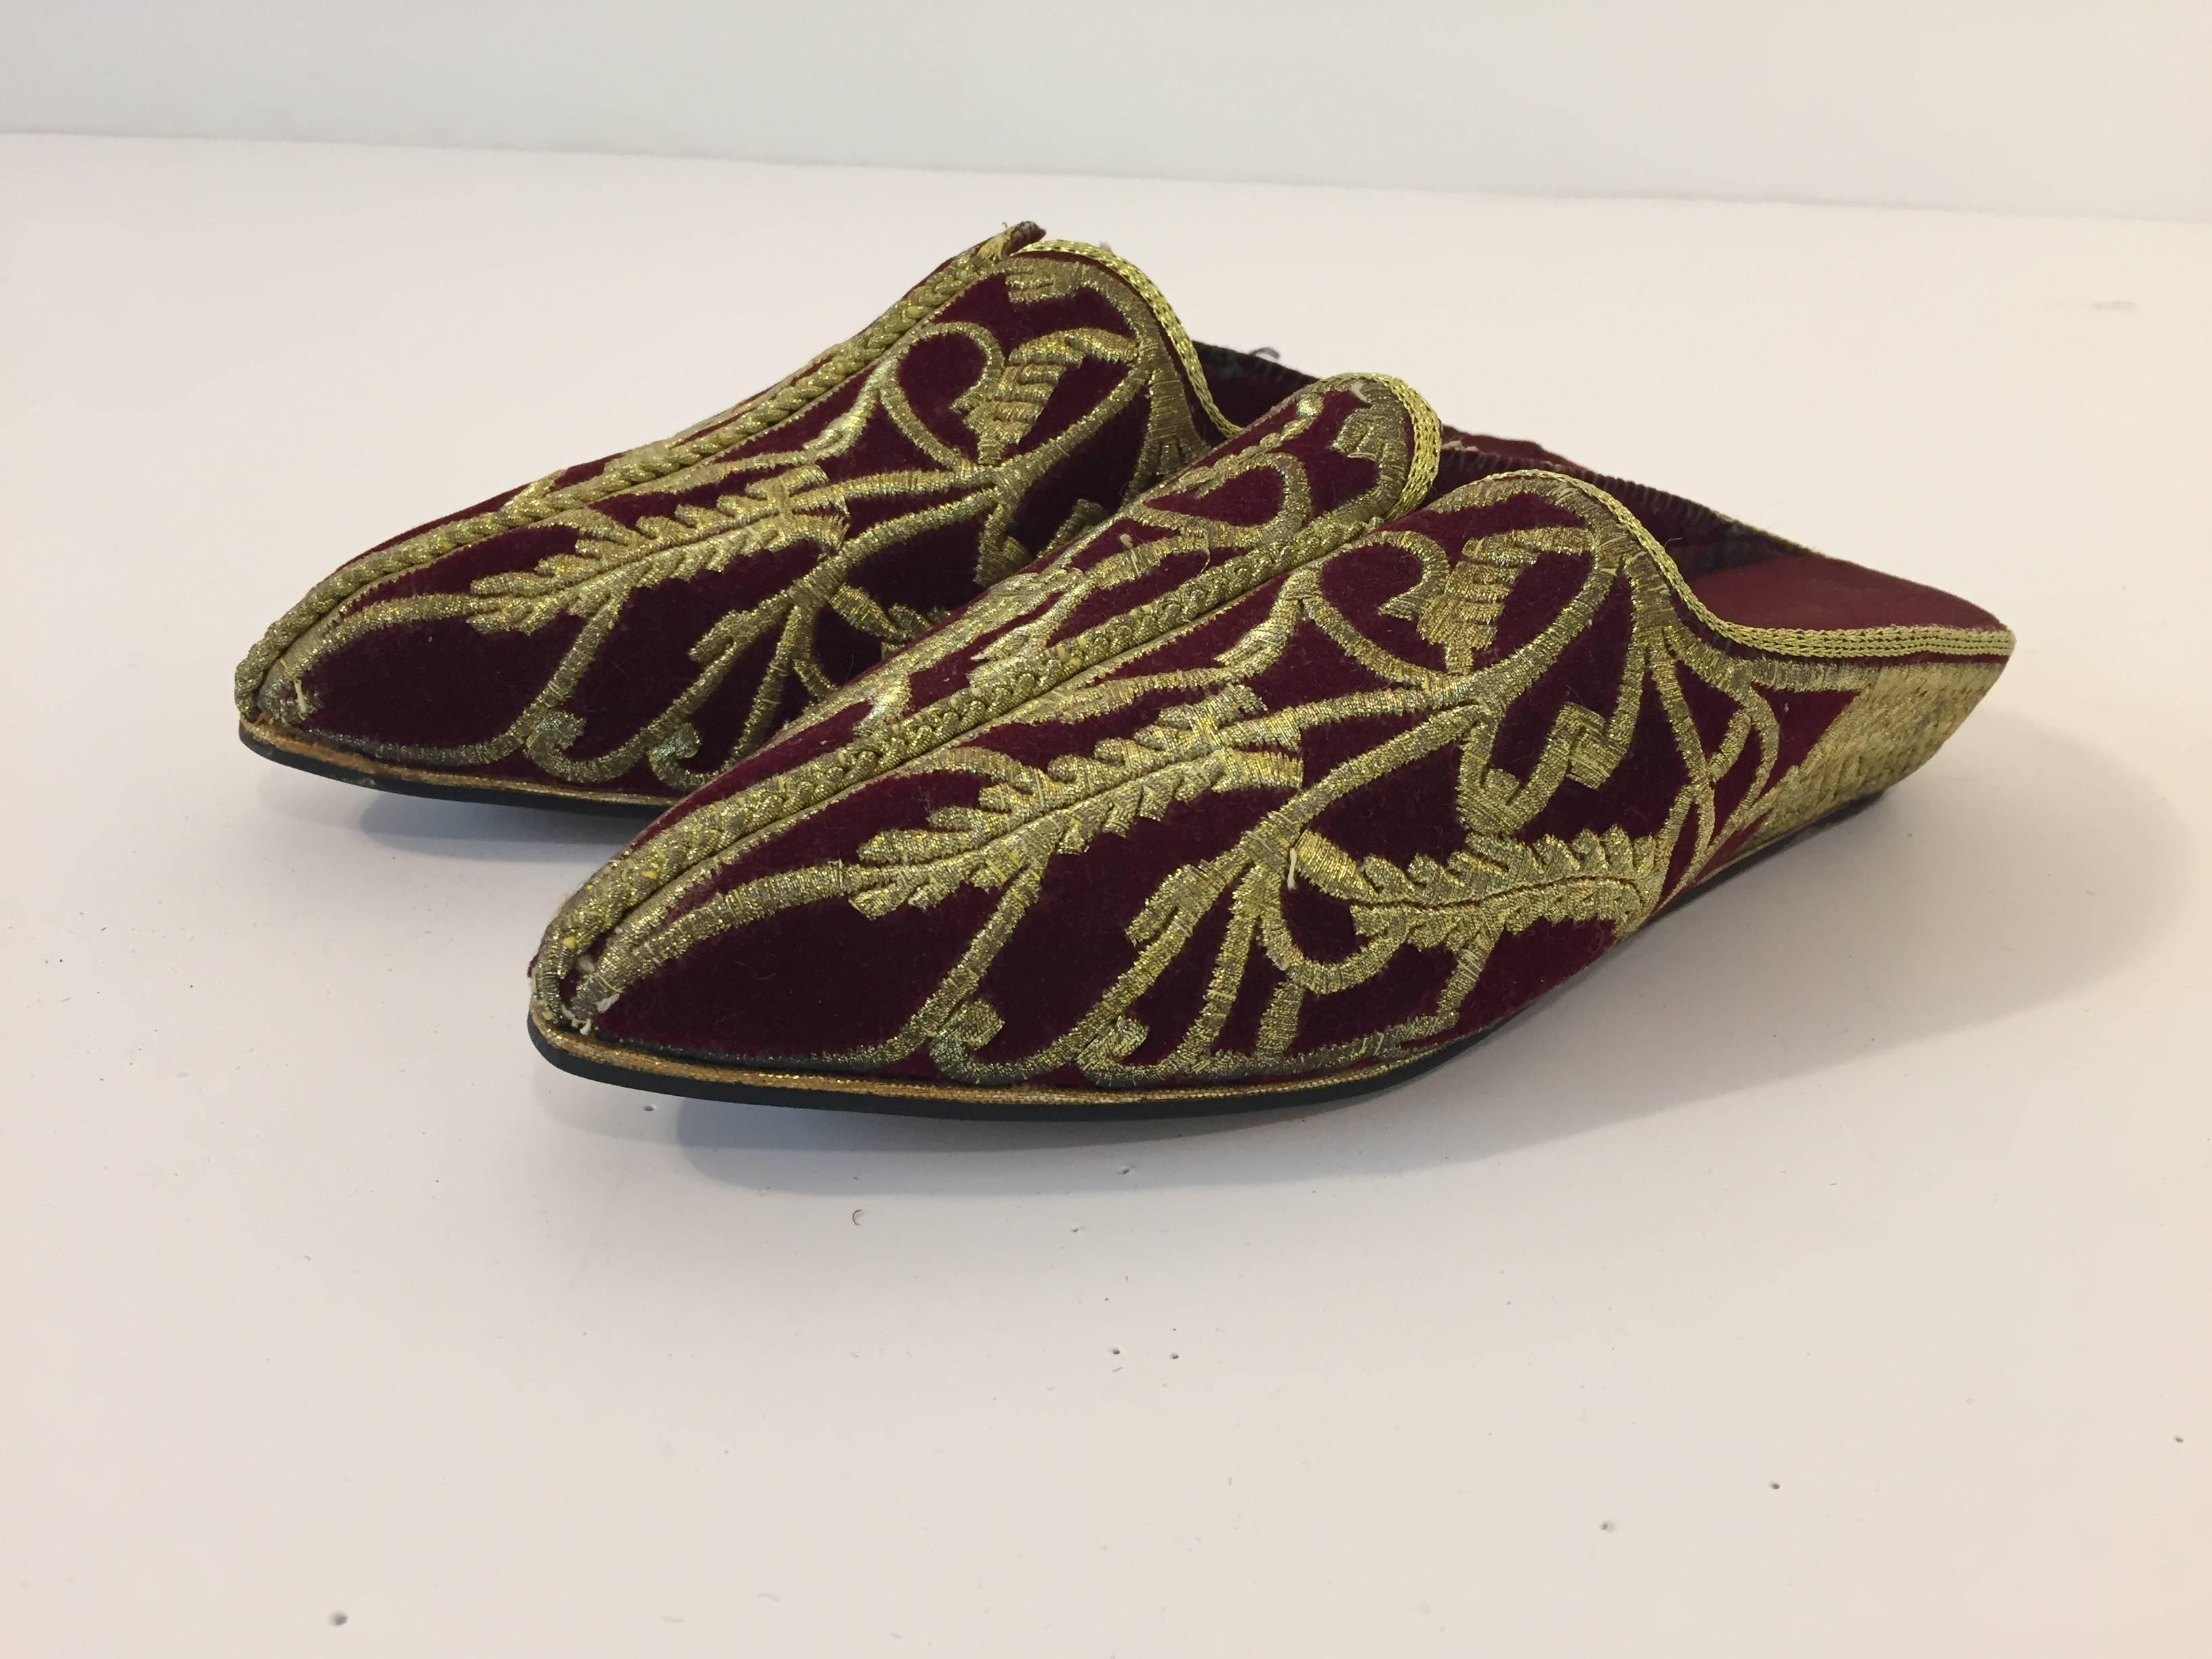 Chaussures exotiques marocaines en velours bordeaux brodé à bout pointu.
Pantoufles plates ethniques mauresques brodées, mogholes, avec fil d'or métallique.
Chaussures en velours de style mauresque turc de la fin de la période ottomane, décorées de